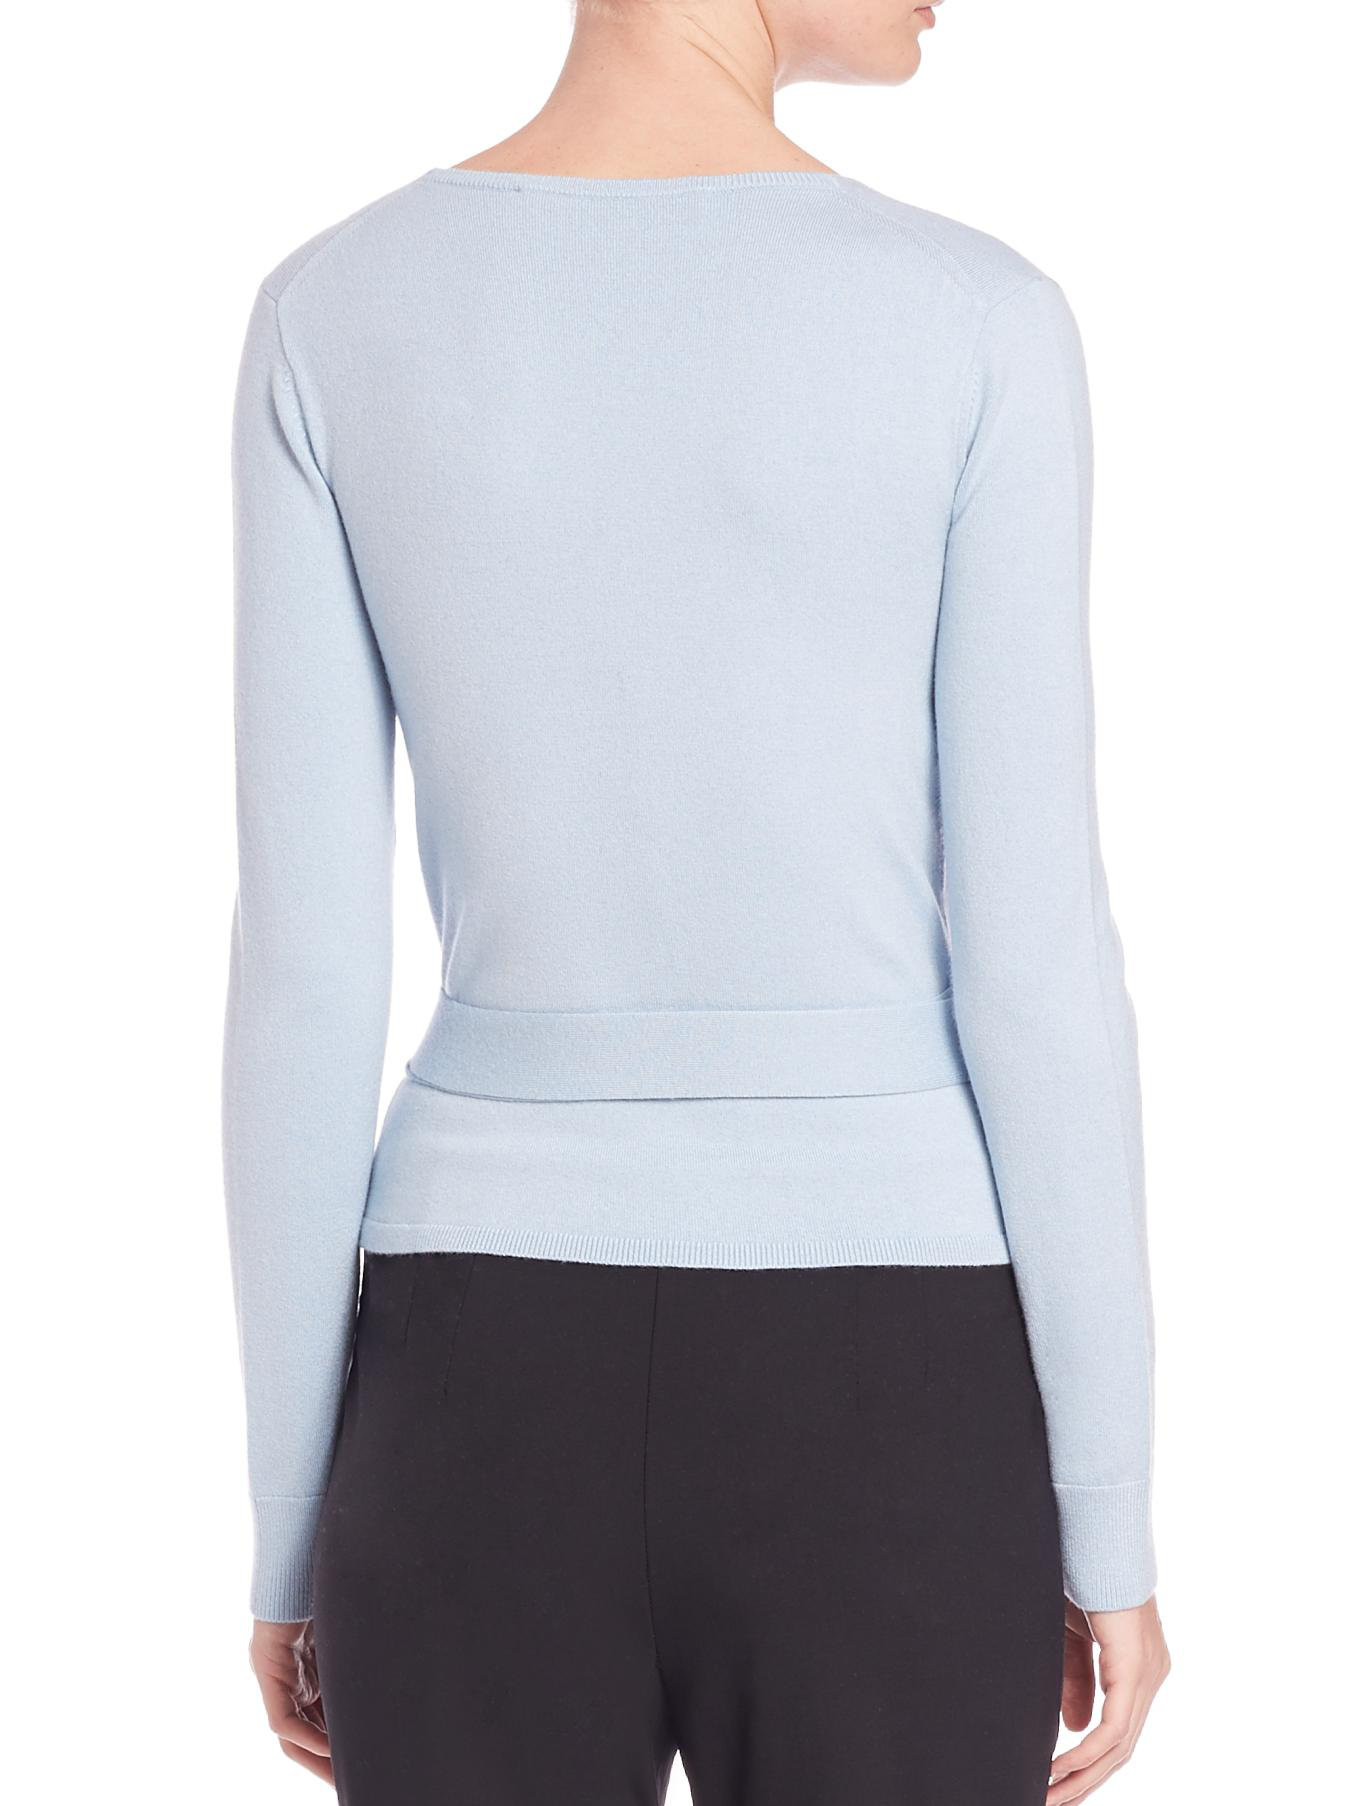 Diane von furstenberg Ballerina Wrap Sweater in Blue | Lyst